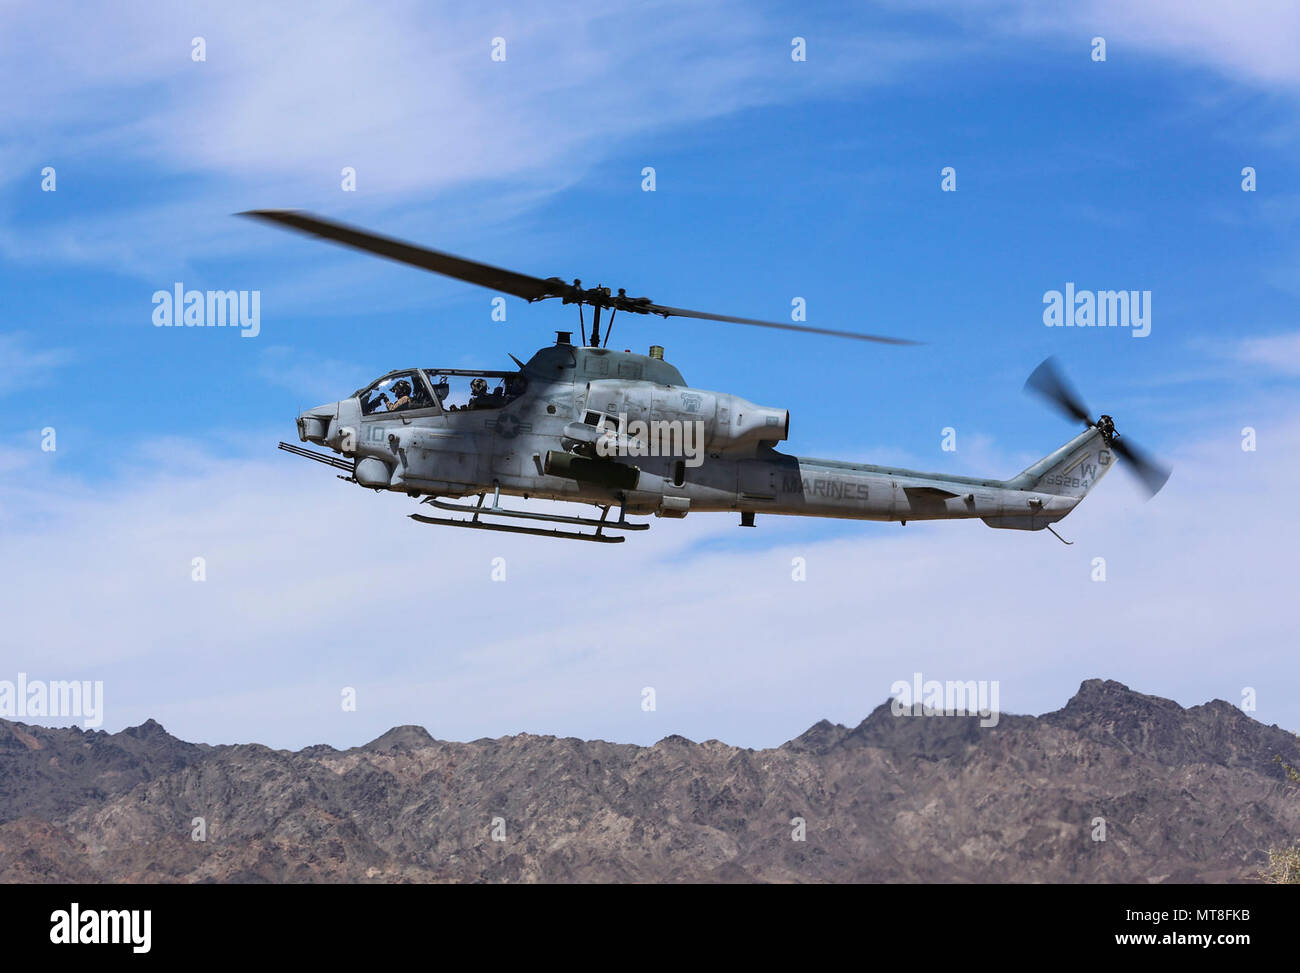 Un AH-1Z Viper prépare à la terre durant l'armement des stations-service (FARP) Opérations dans le cadre de voies de formations (AST) 1 à l'appui de la conférence armes et tactiques - Instructeur (WTI) 2-17, à la montagne de chocolat de tir aérien, en Californie, le 17 avril. D'une durée de sept semaines, le WTI est une évolution de la formation organisée par Marine Aviation et les armes Tactics Squadron (MAWTS 1) qui fournit les advanced et tactique de l'unité de formation et de certification des qualifications du personnel enseignant à l'appui de l'aviation maritime de la formation et de l'état de préparation. Banque D'Images